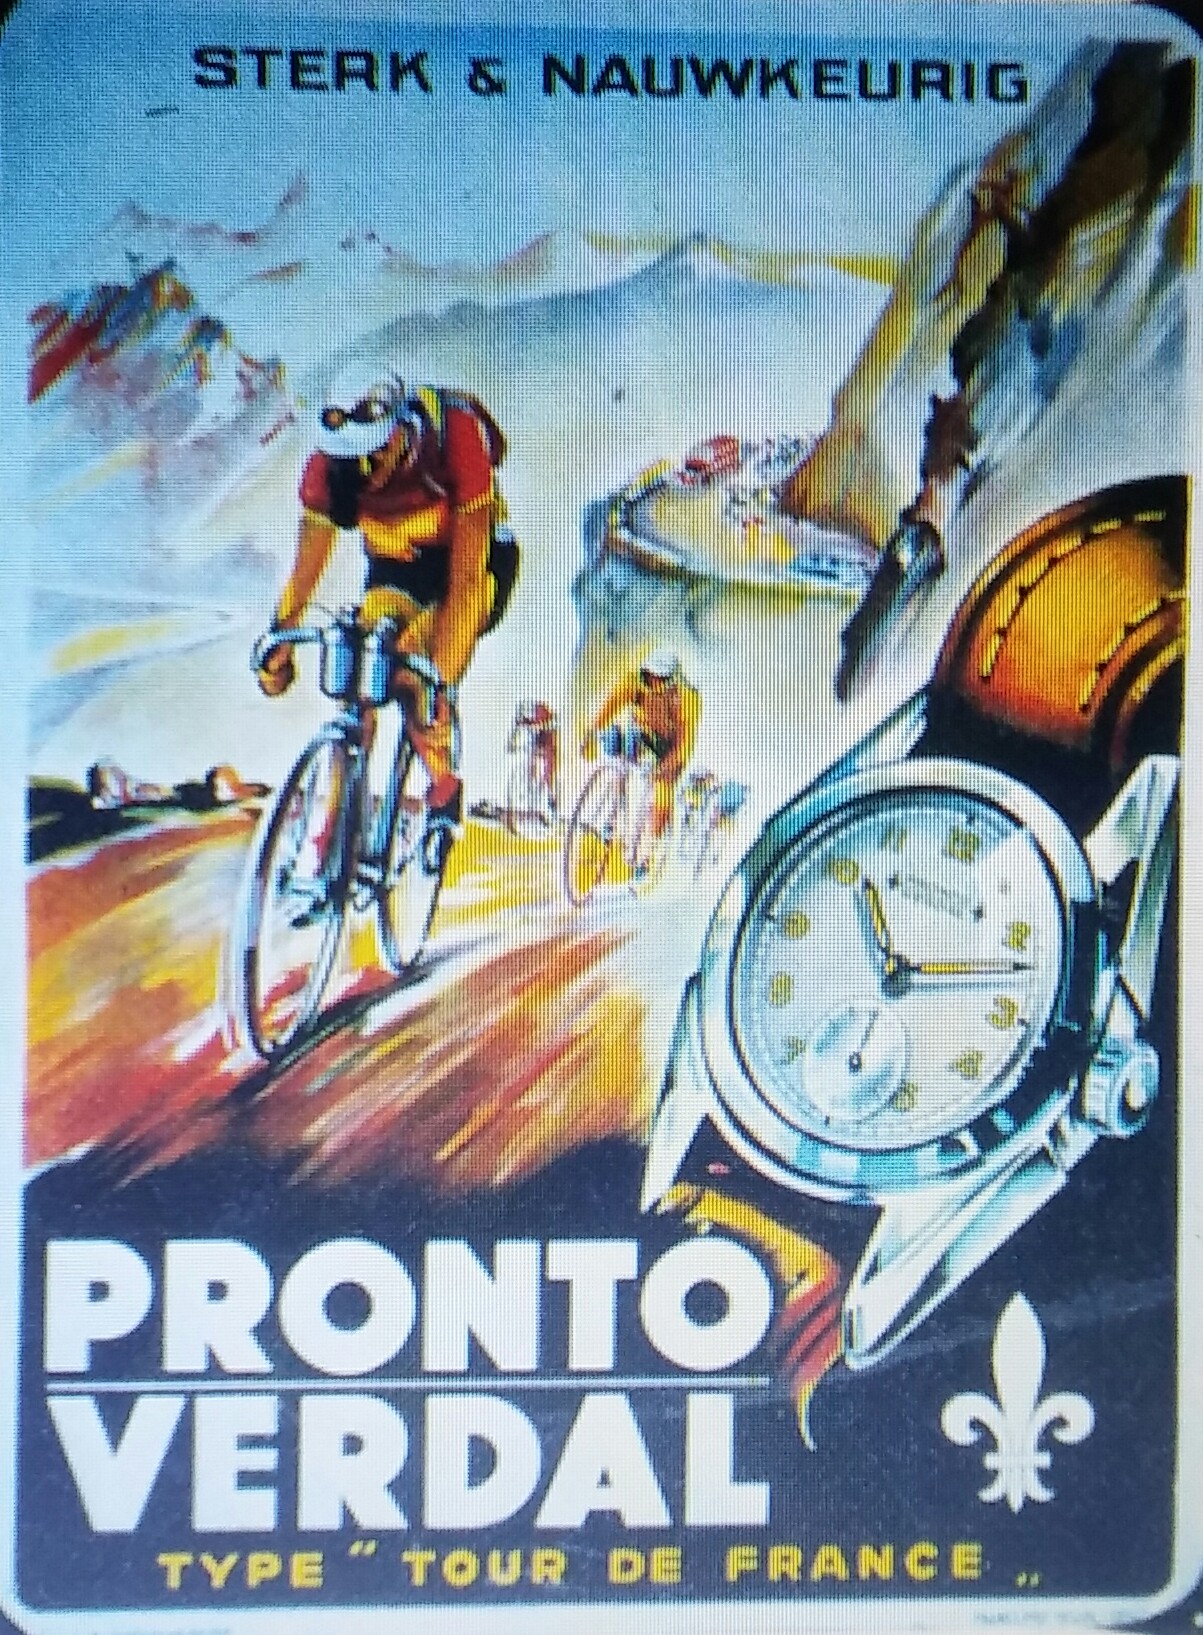 1945-46 reklame